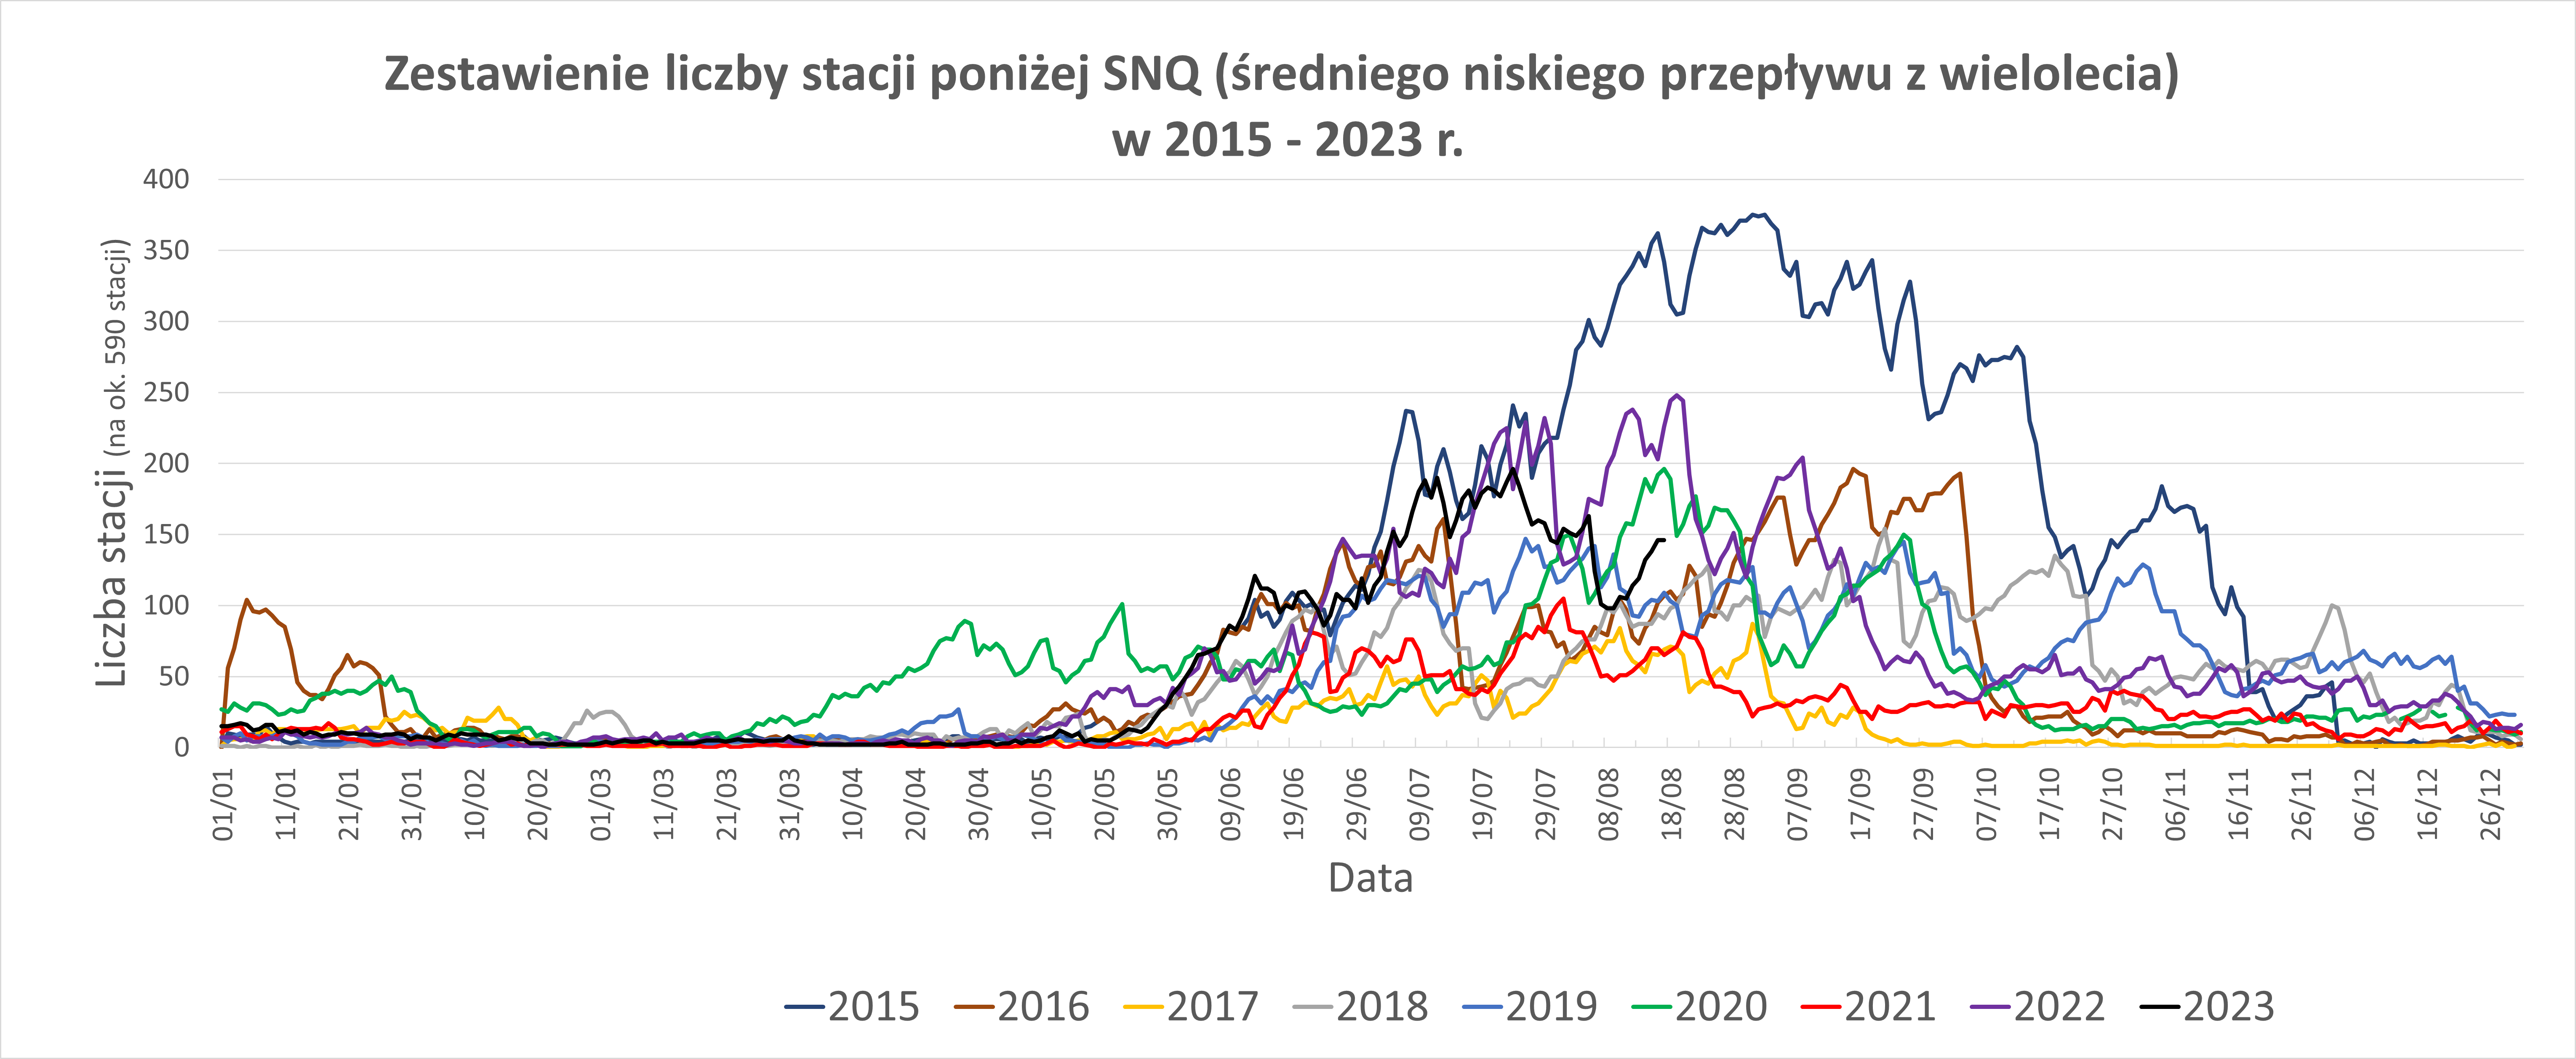 Porównanie liczby stacji z przepływem poniżej SNQ